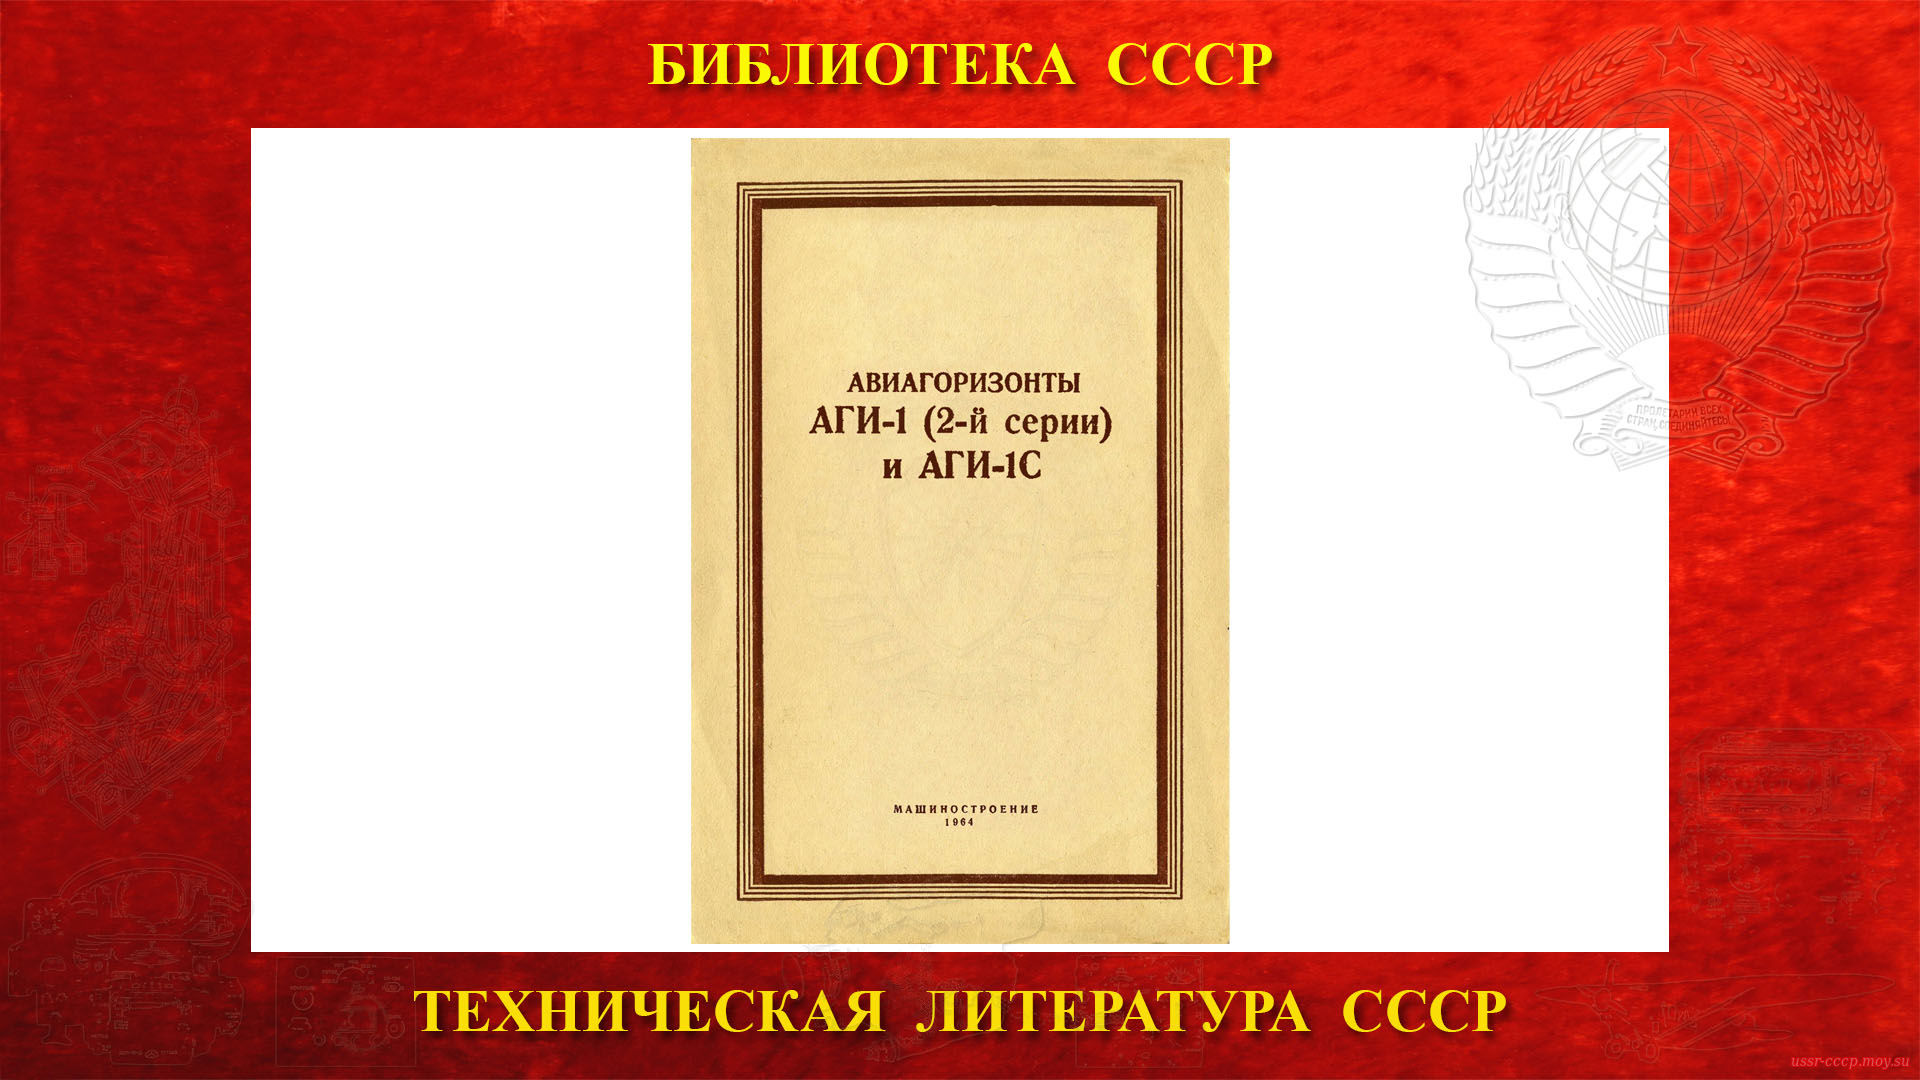 Авиагоризонты АГИ-1 (2-й серии) и АГИ-1С — Библиотека СССР (1964)